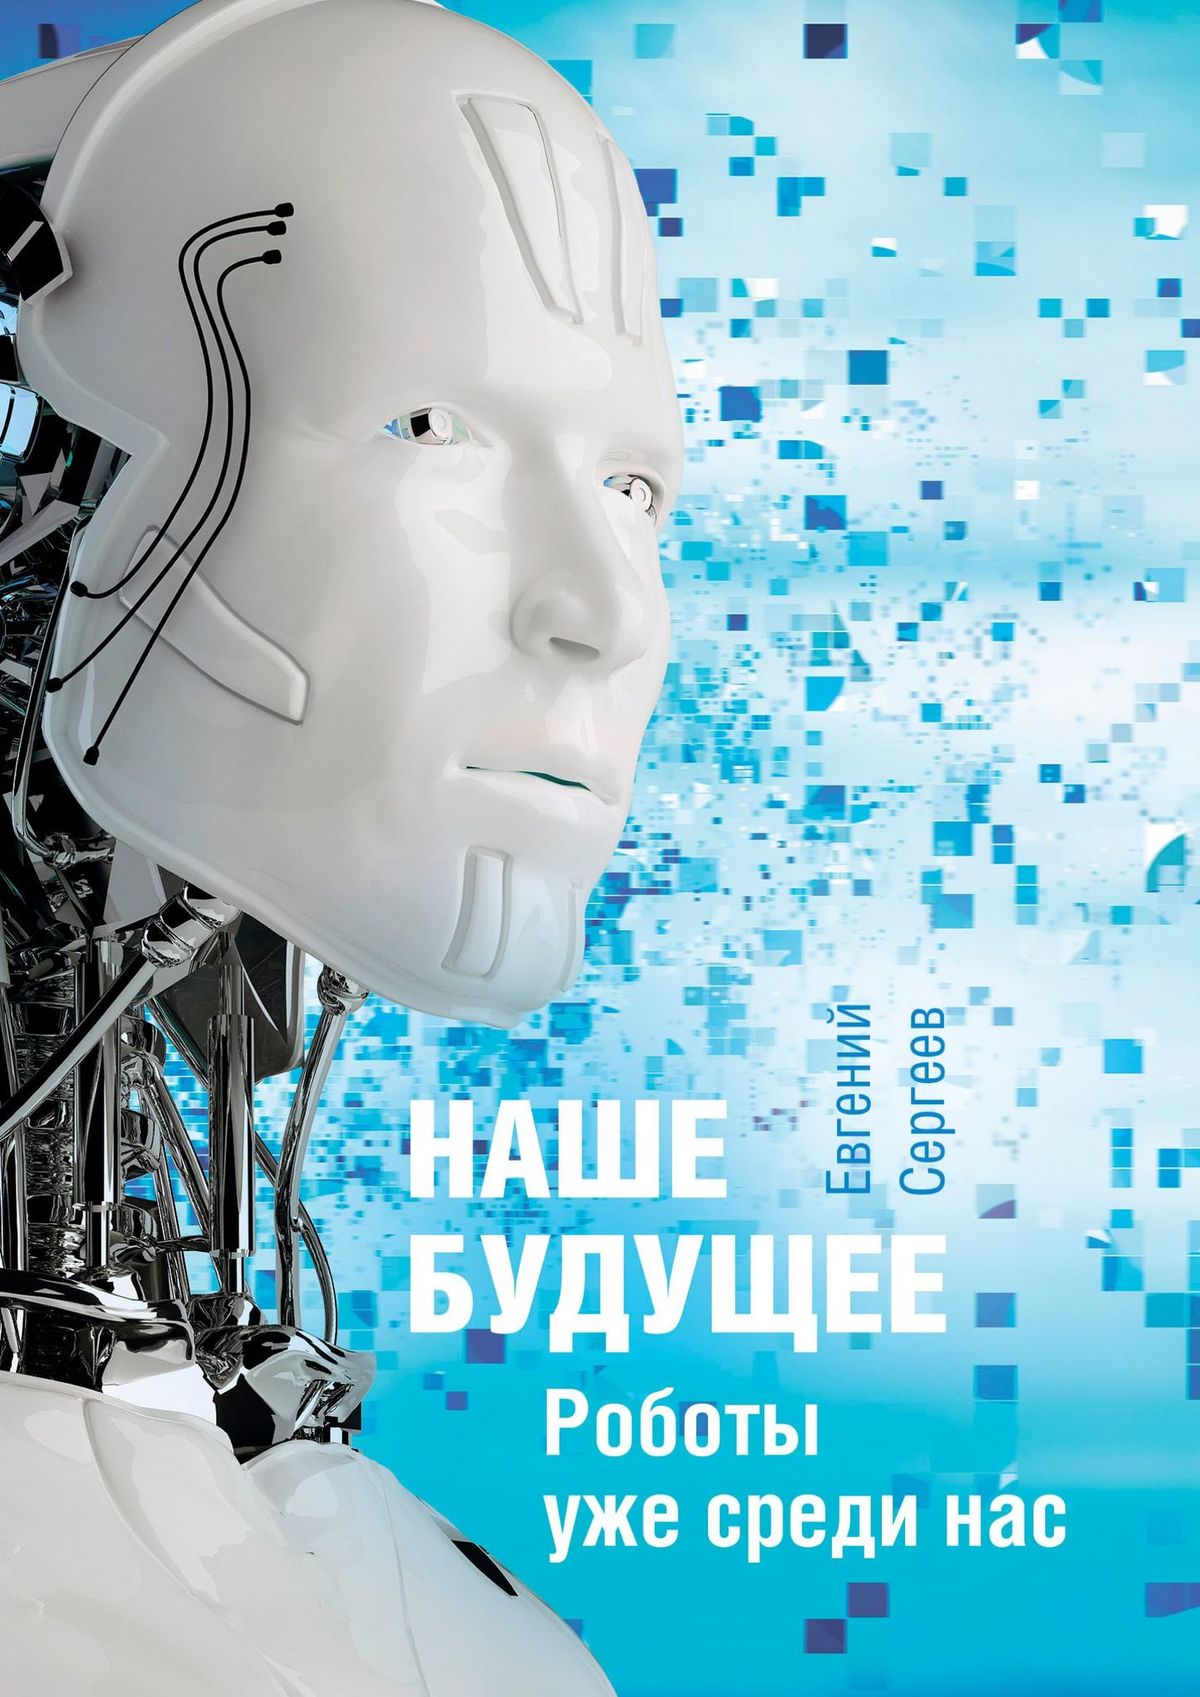 Книга  Наше будущее. Роботы уже среди нас созданная Евгений Сергеев может относится к жанру научная фантастика, просто о бизнесе, публицистика. Стоимость электронной книги Наше будущее. Роботы уже среди нас с идентификатором 26713053 составляет 100.00 руб.